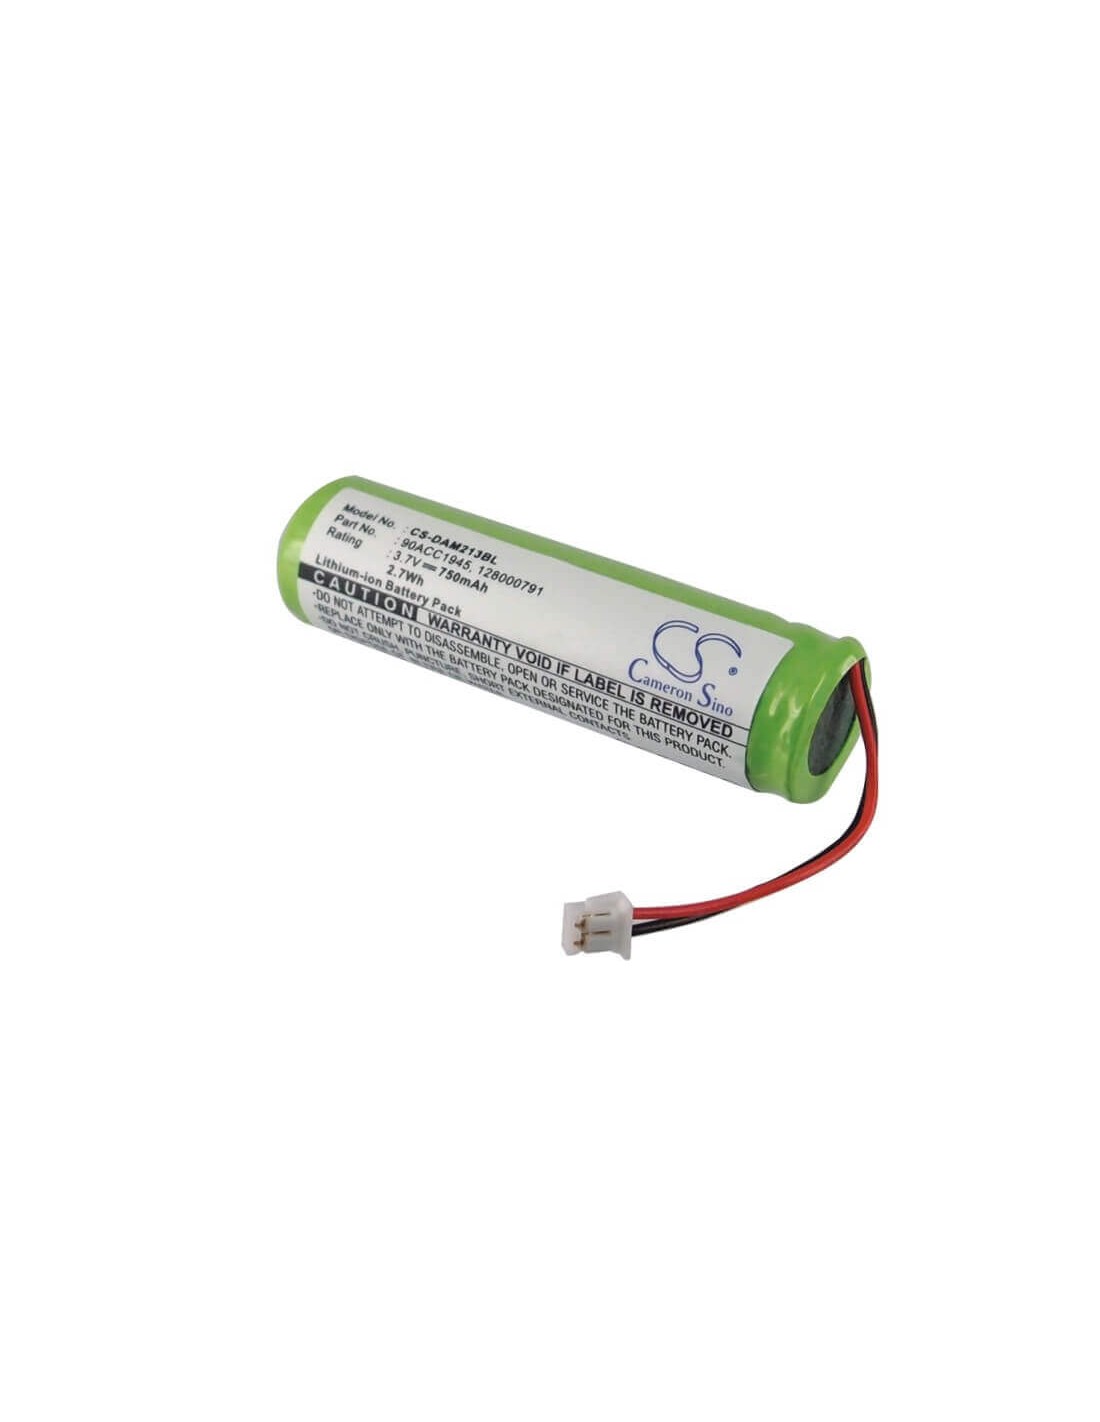 Battery for Datalogic Quickscan Mobile 2130, M2130, Qm2130 3.7V, 750mAh - 2.78Wh